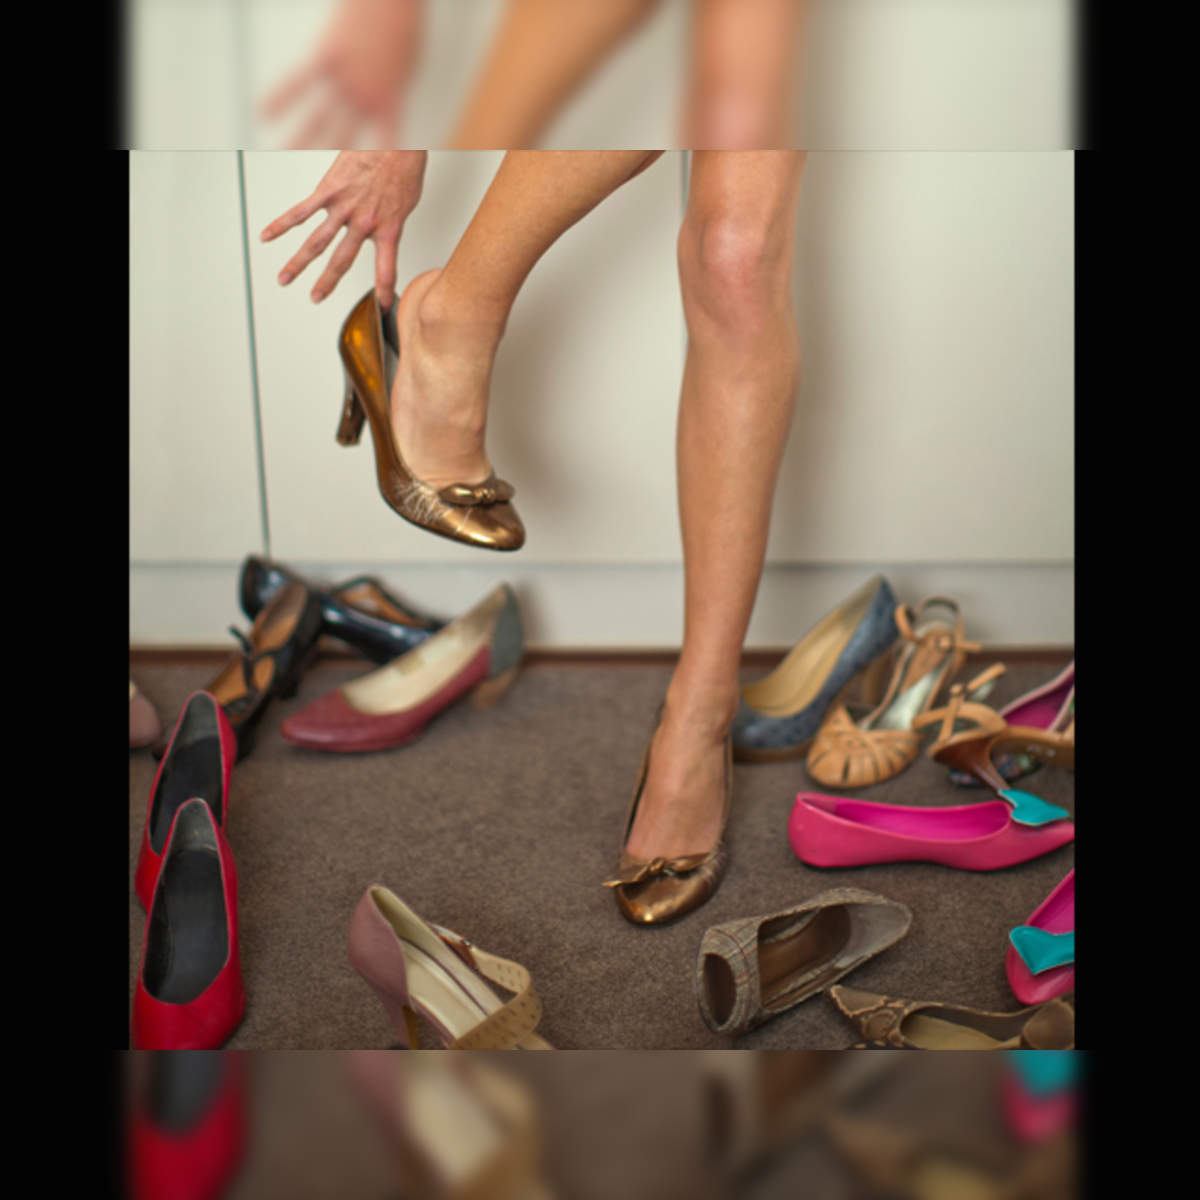 When Should Girls Be Allowed to Wear Heels?